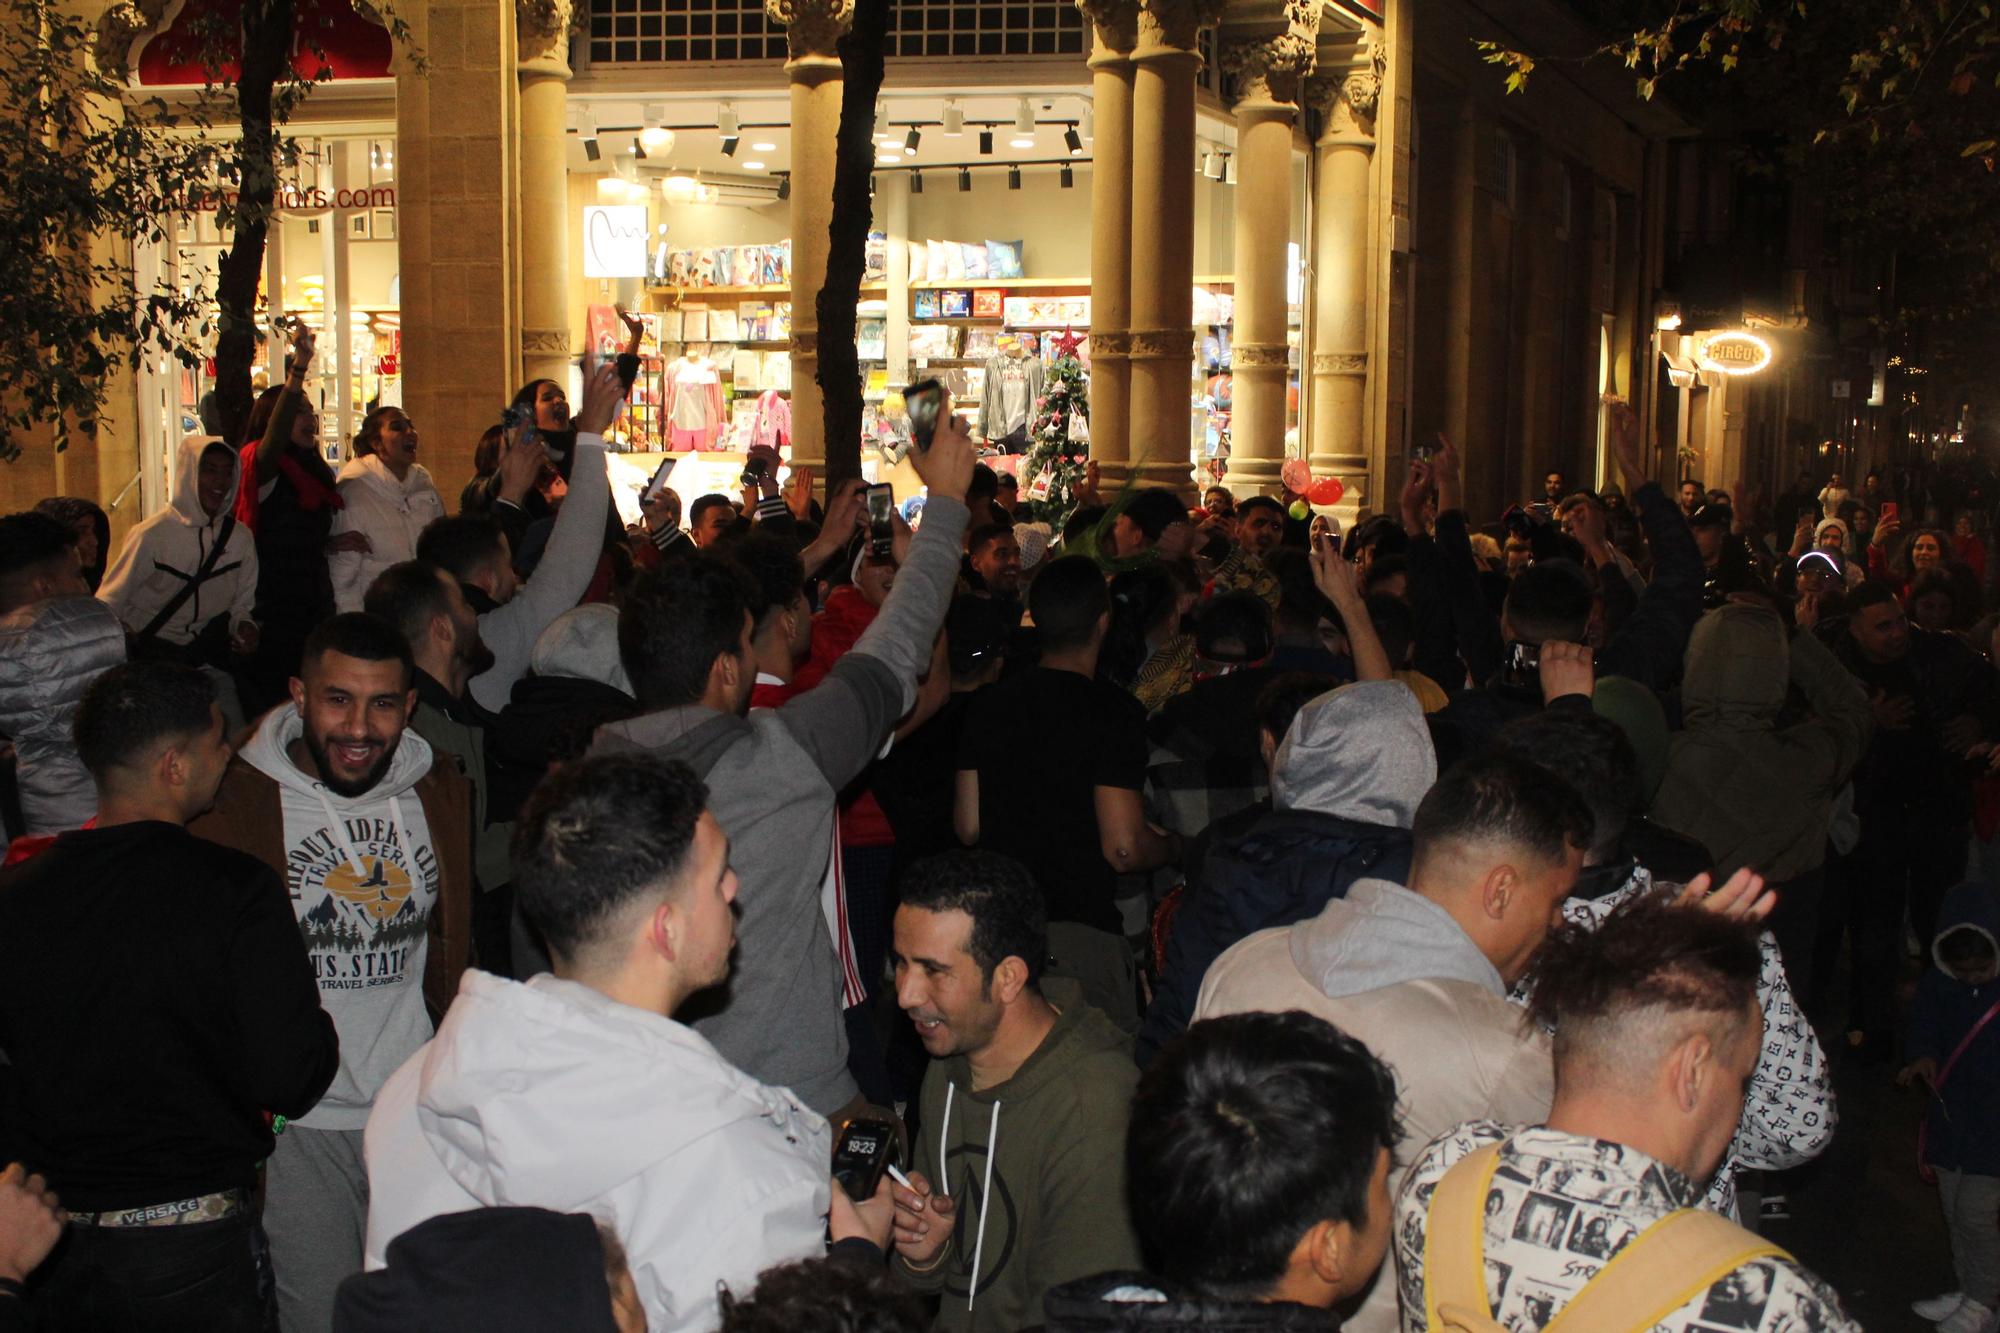 Eufòria entre la comunitat marroquí de Manresa en la celebració de la victòria contra Espanya al Mundial de Qatar